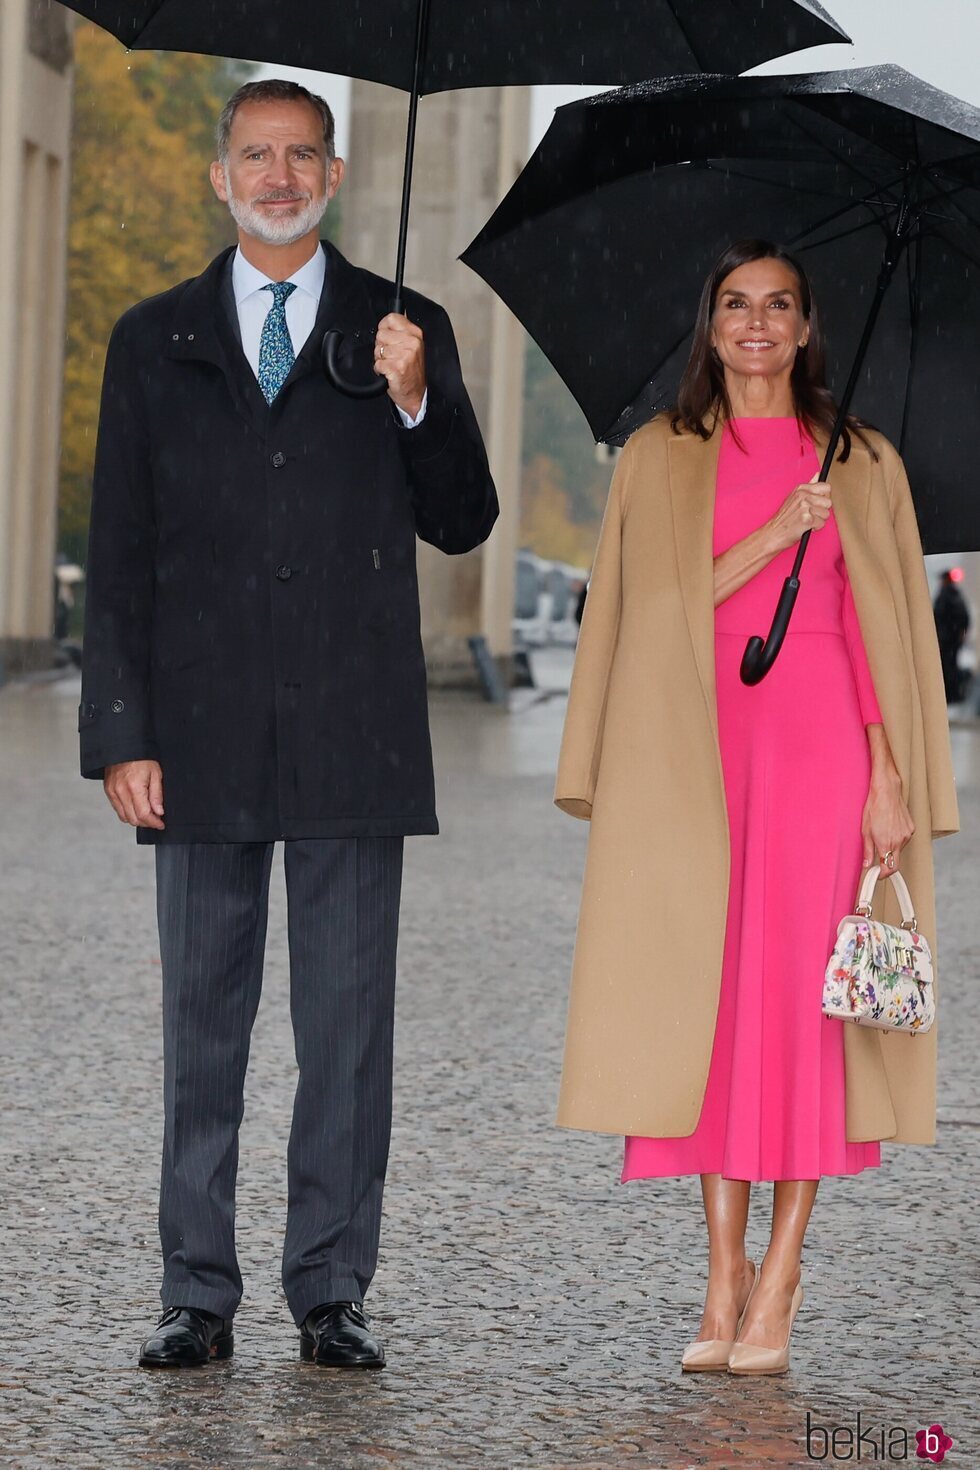 Los Reyes Felipe y Letizia en la Puerta de Brandeburgo en la Visita de Estado de los Reyes de España a Alemania